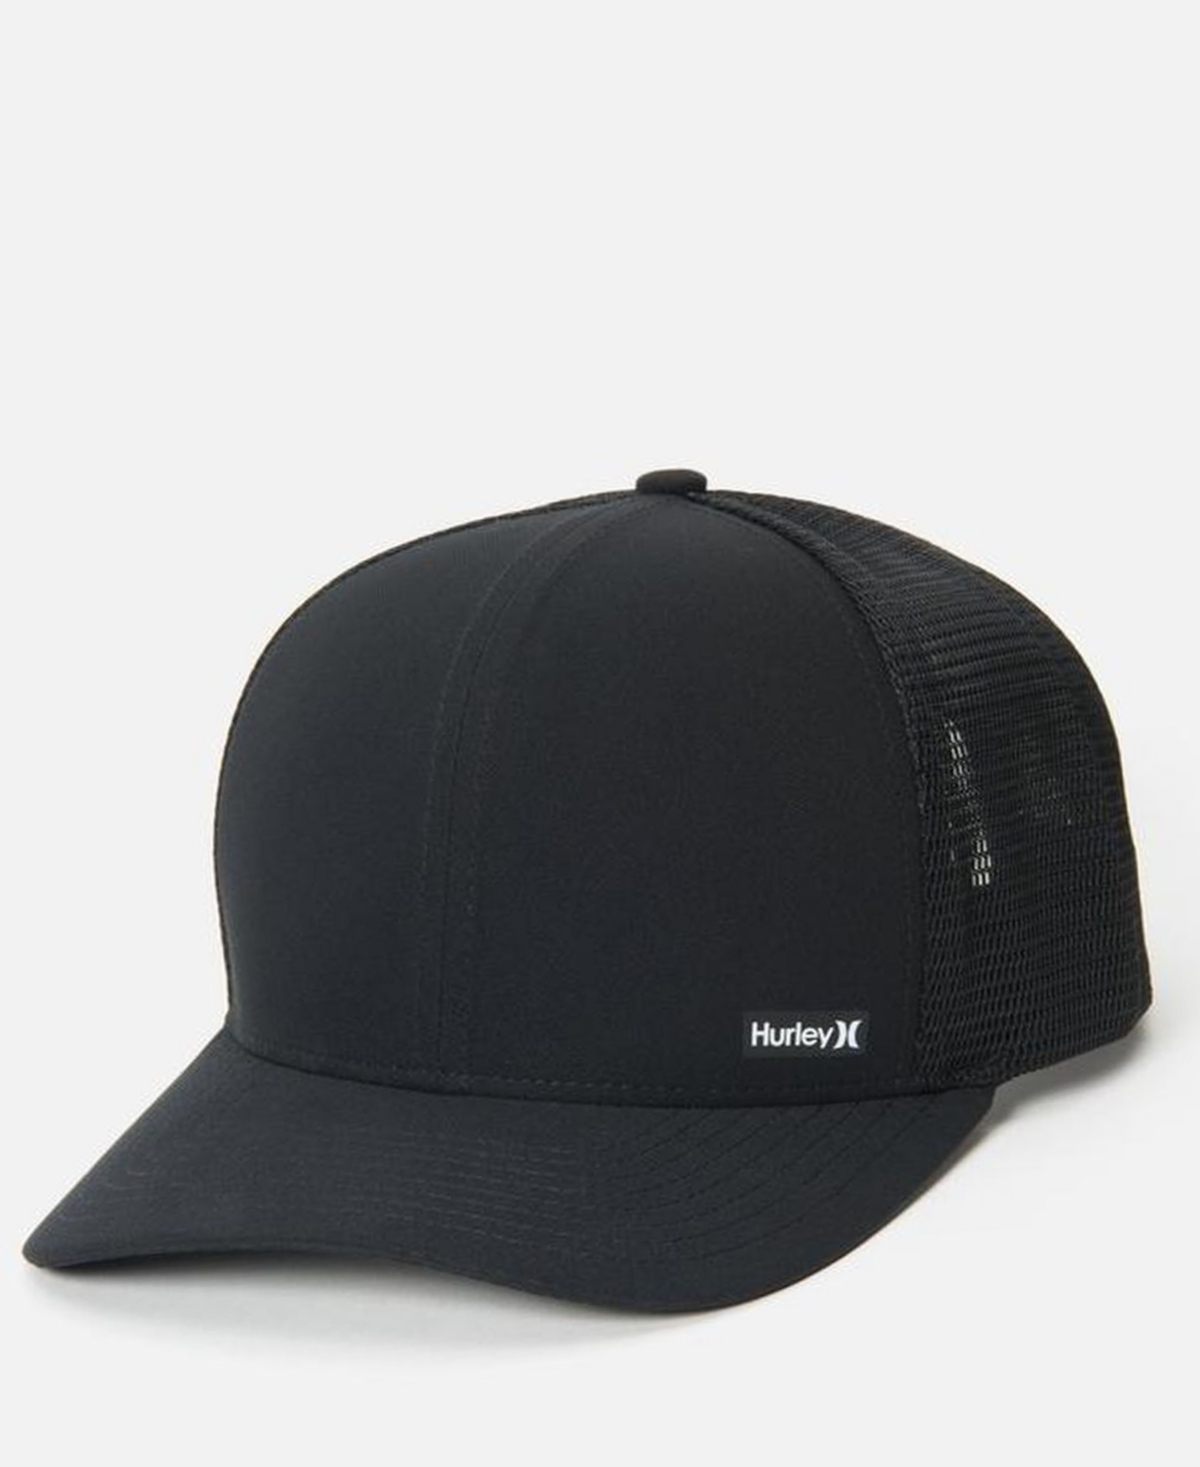 Men's League Hat - Black/White